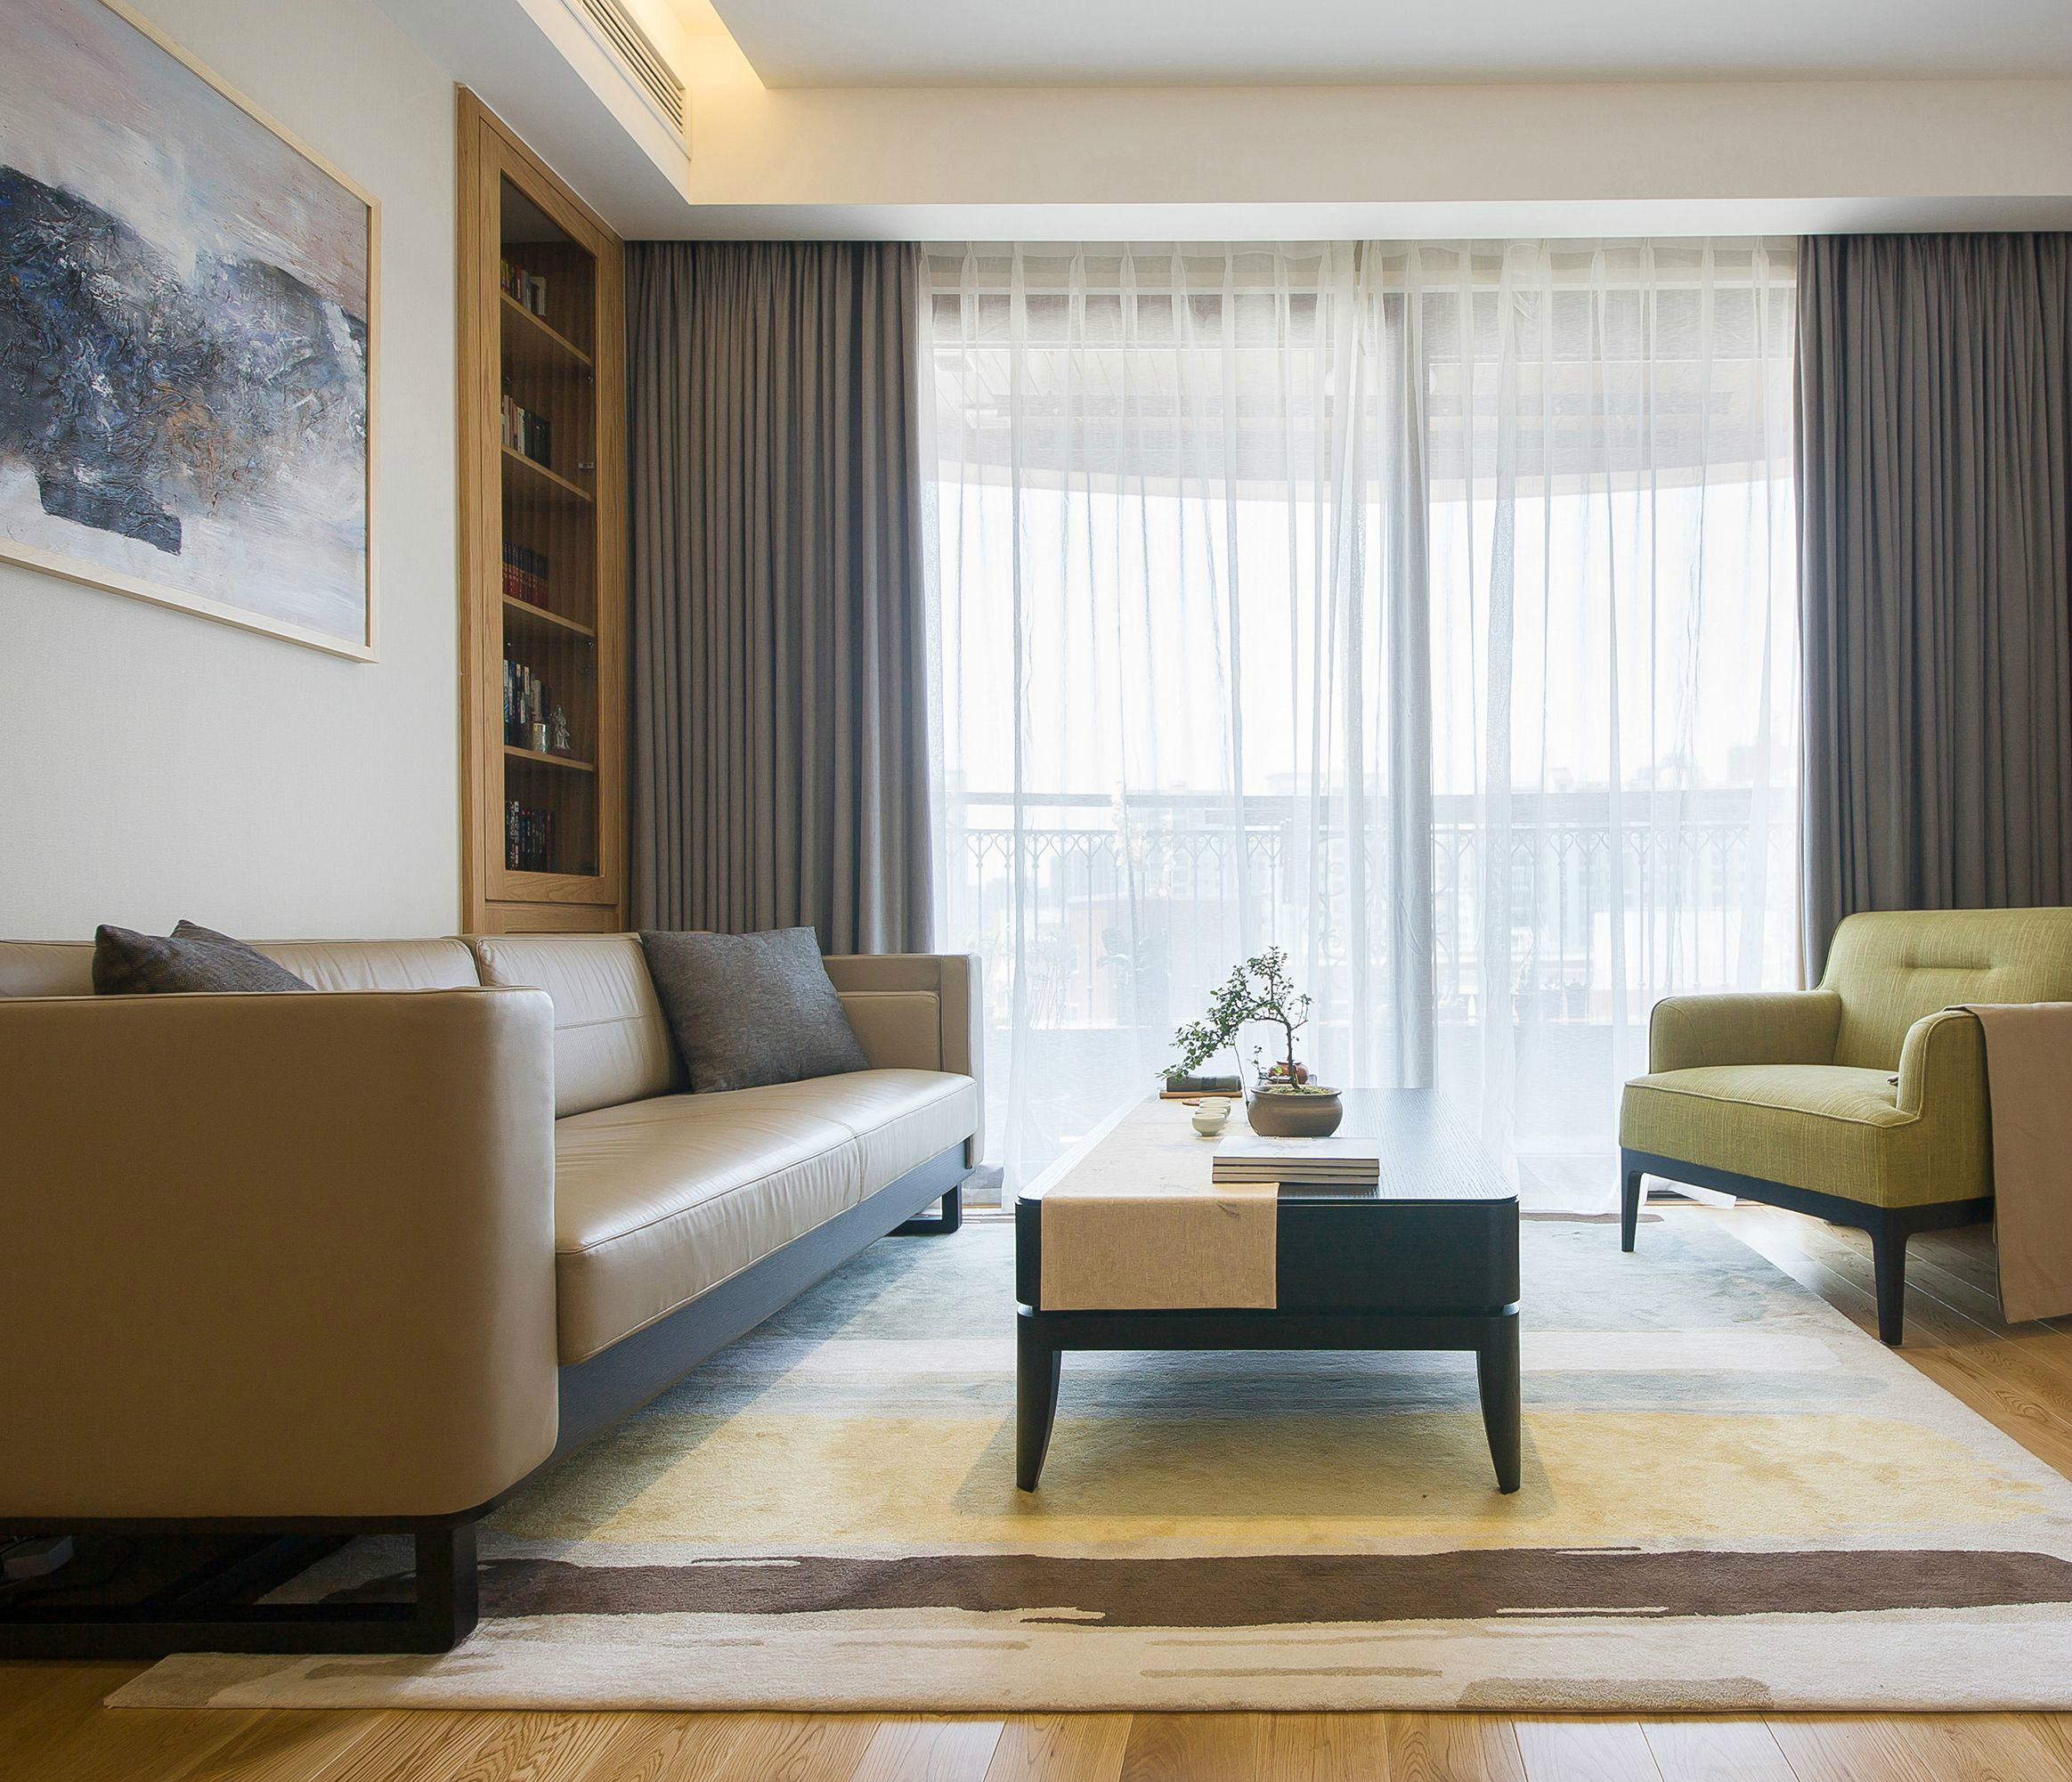 客厅配色简单,橘色皮质沙发,灰色窗帘,果木绿座椅,舒适感十足